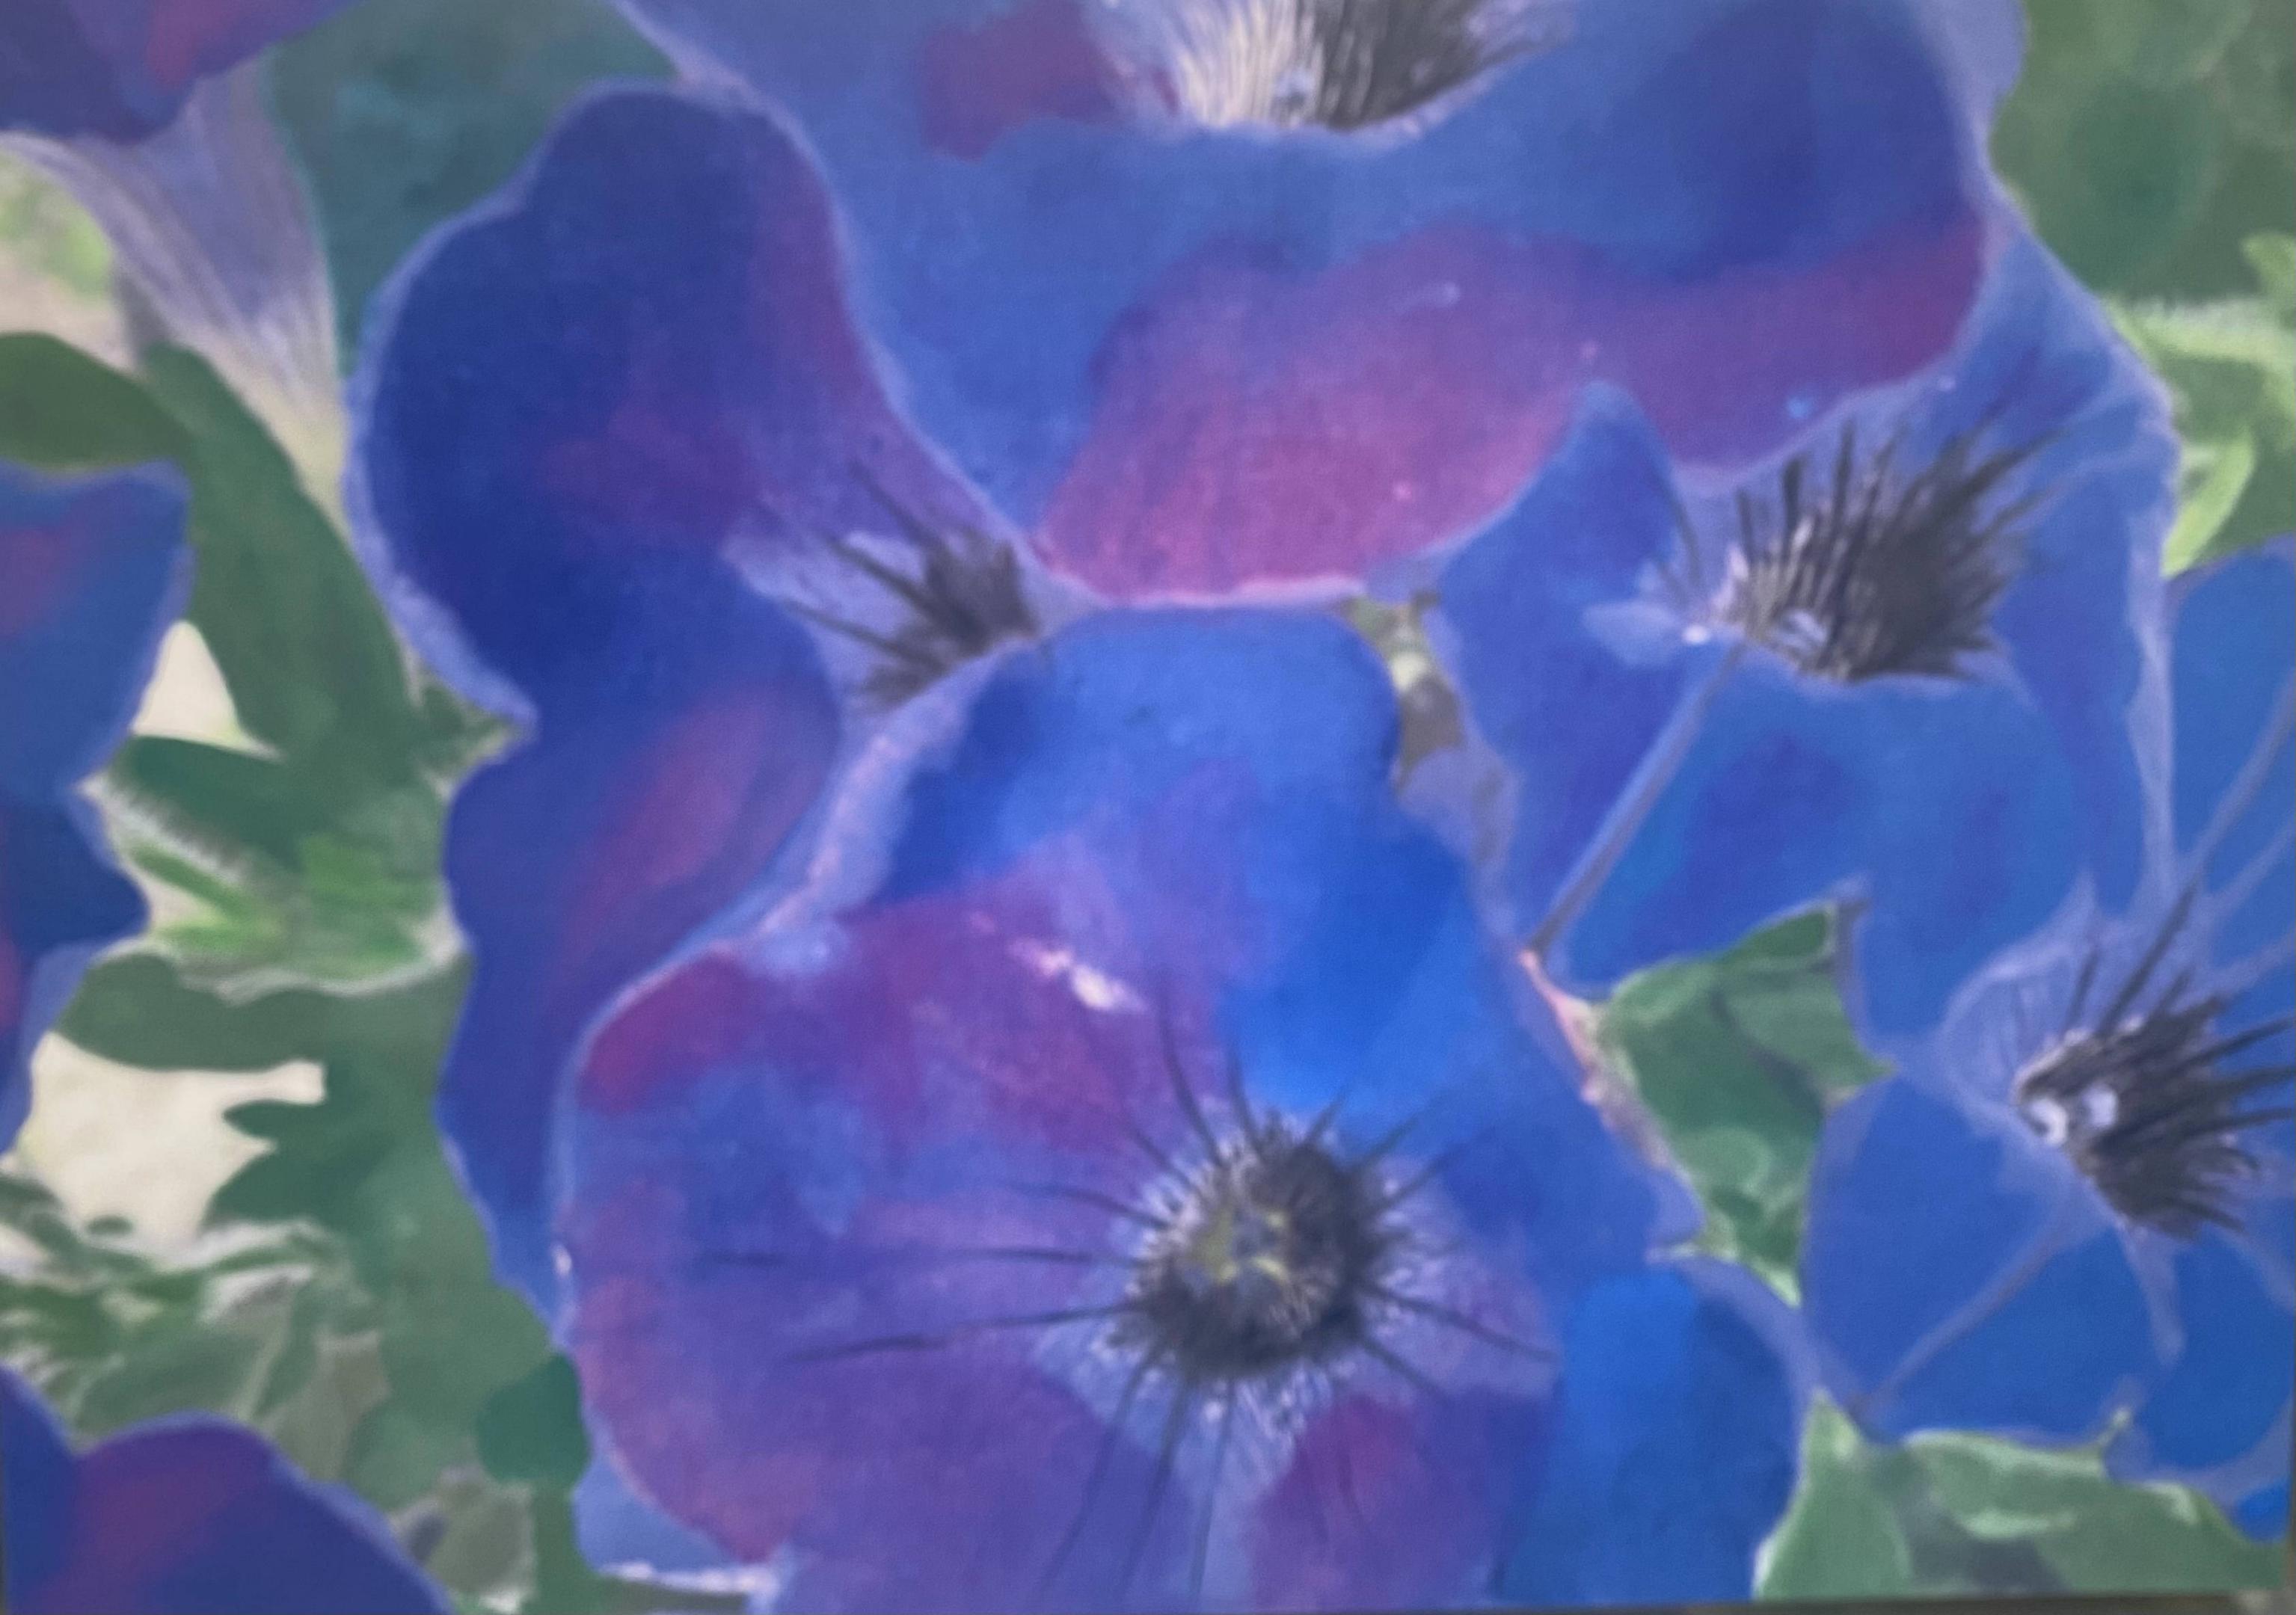 Flores azules&#60;br&#62;Foto y acrílico sobre tela&#60;br&#62;87x63.5cm